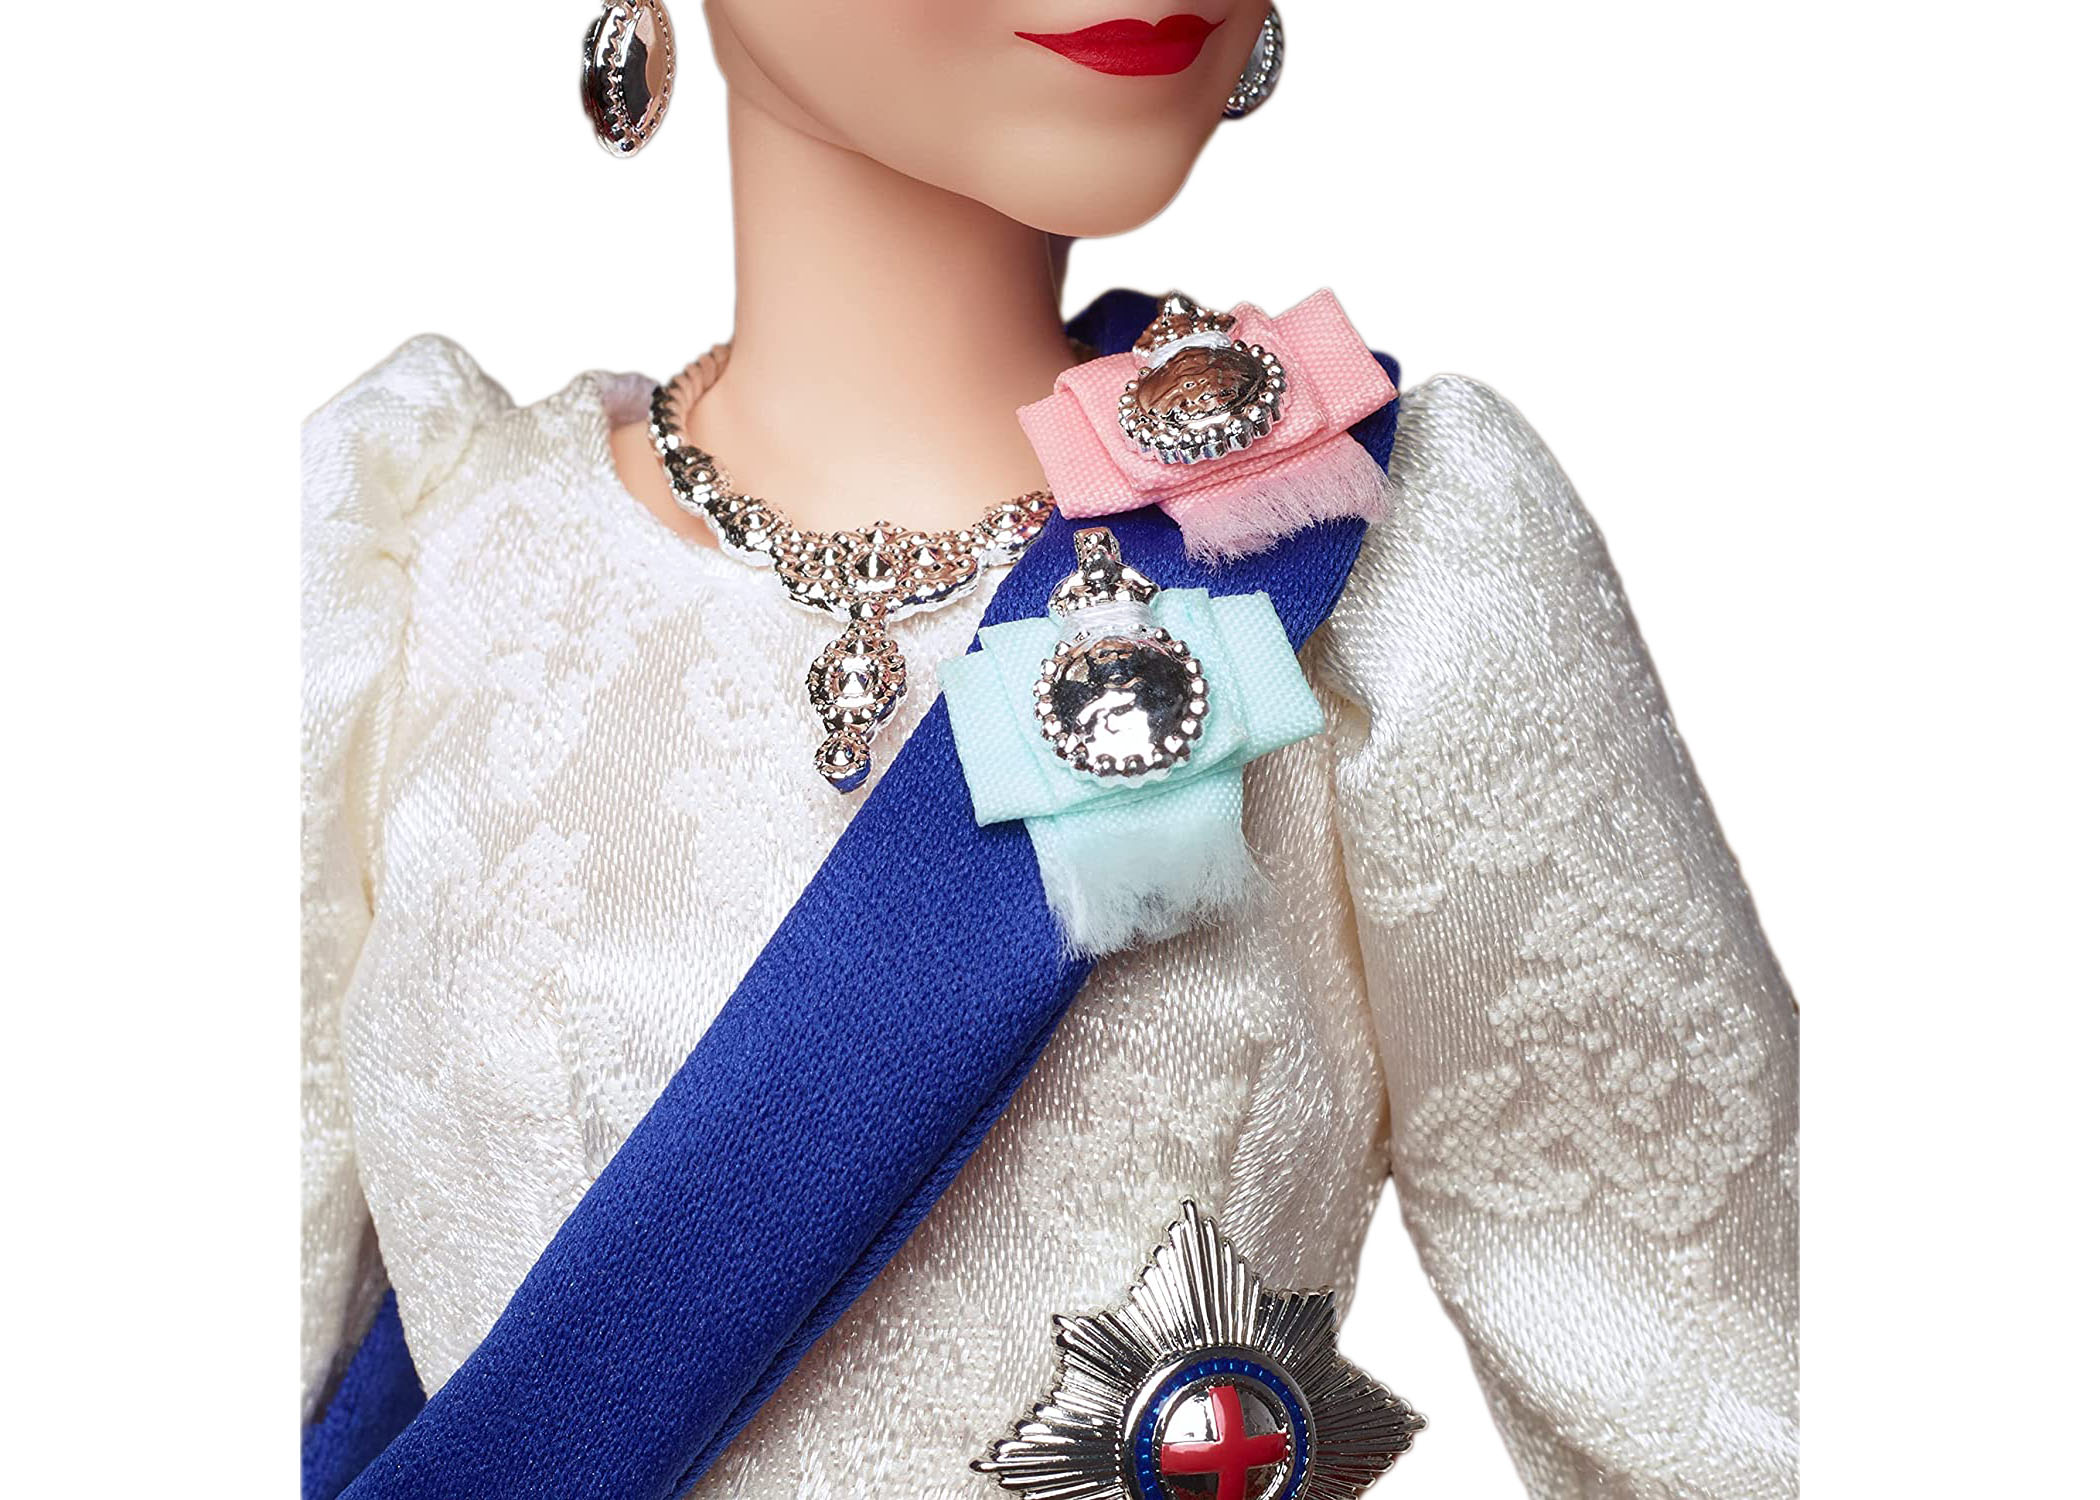 Barbie Signature Queen Elizabeth II Platinum Jubilee Doll - US